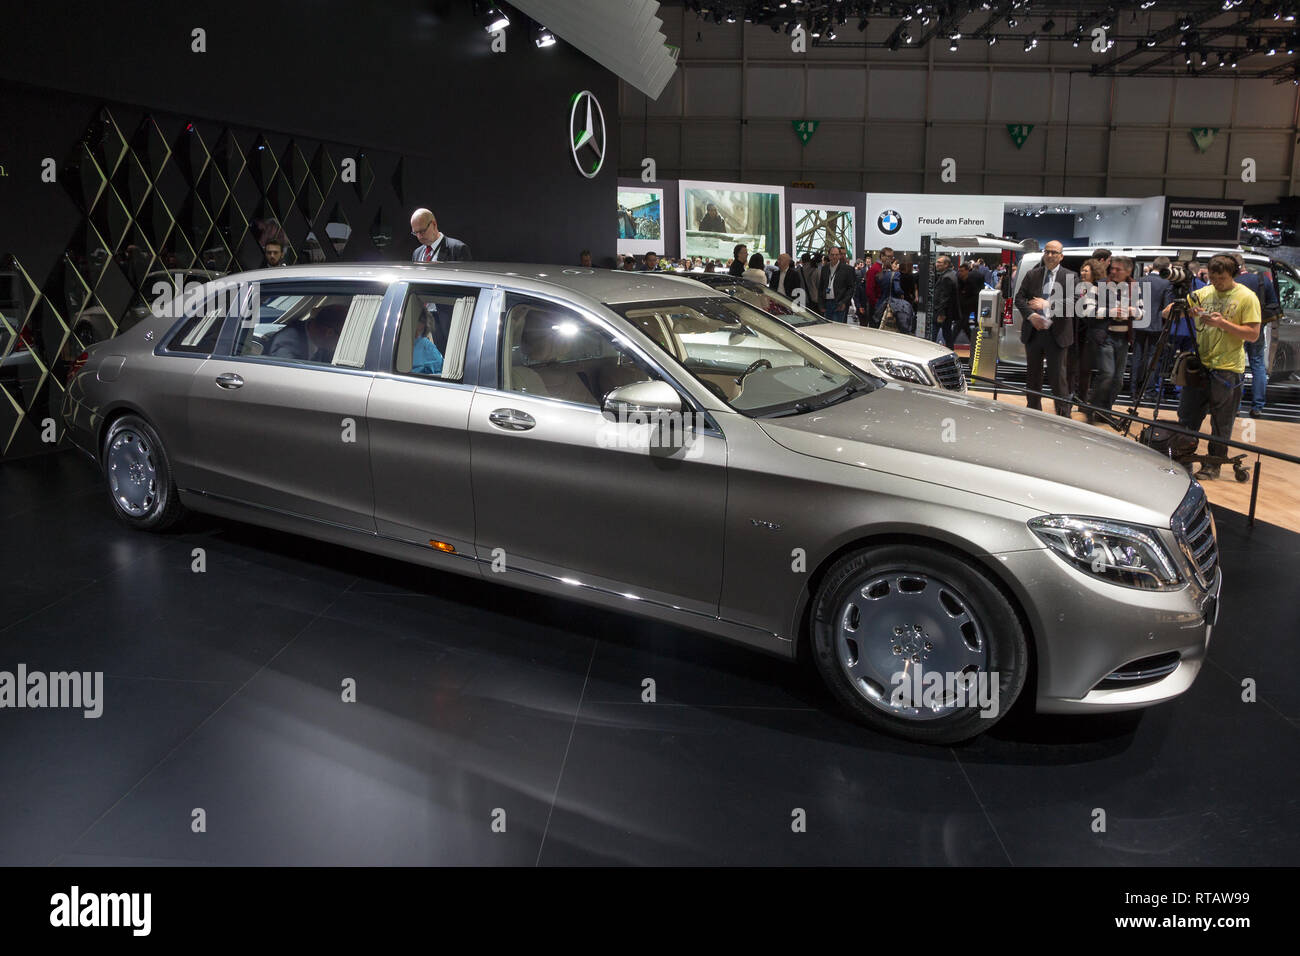 Mercedes-Maybach S Haute Voiture: Prestige-Limousine für Fashion